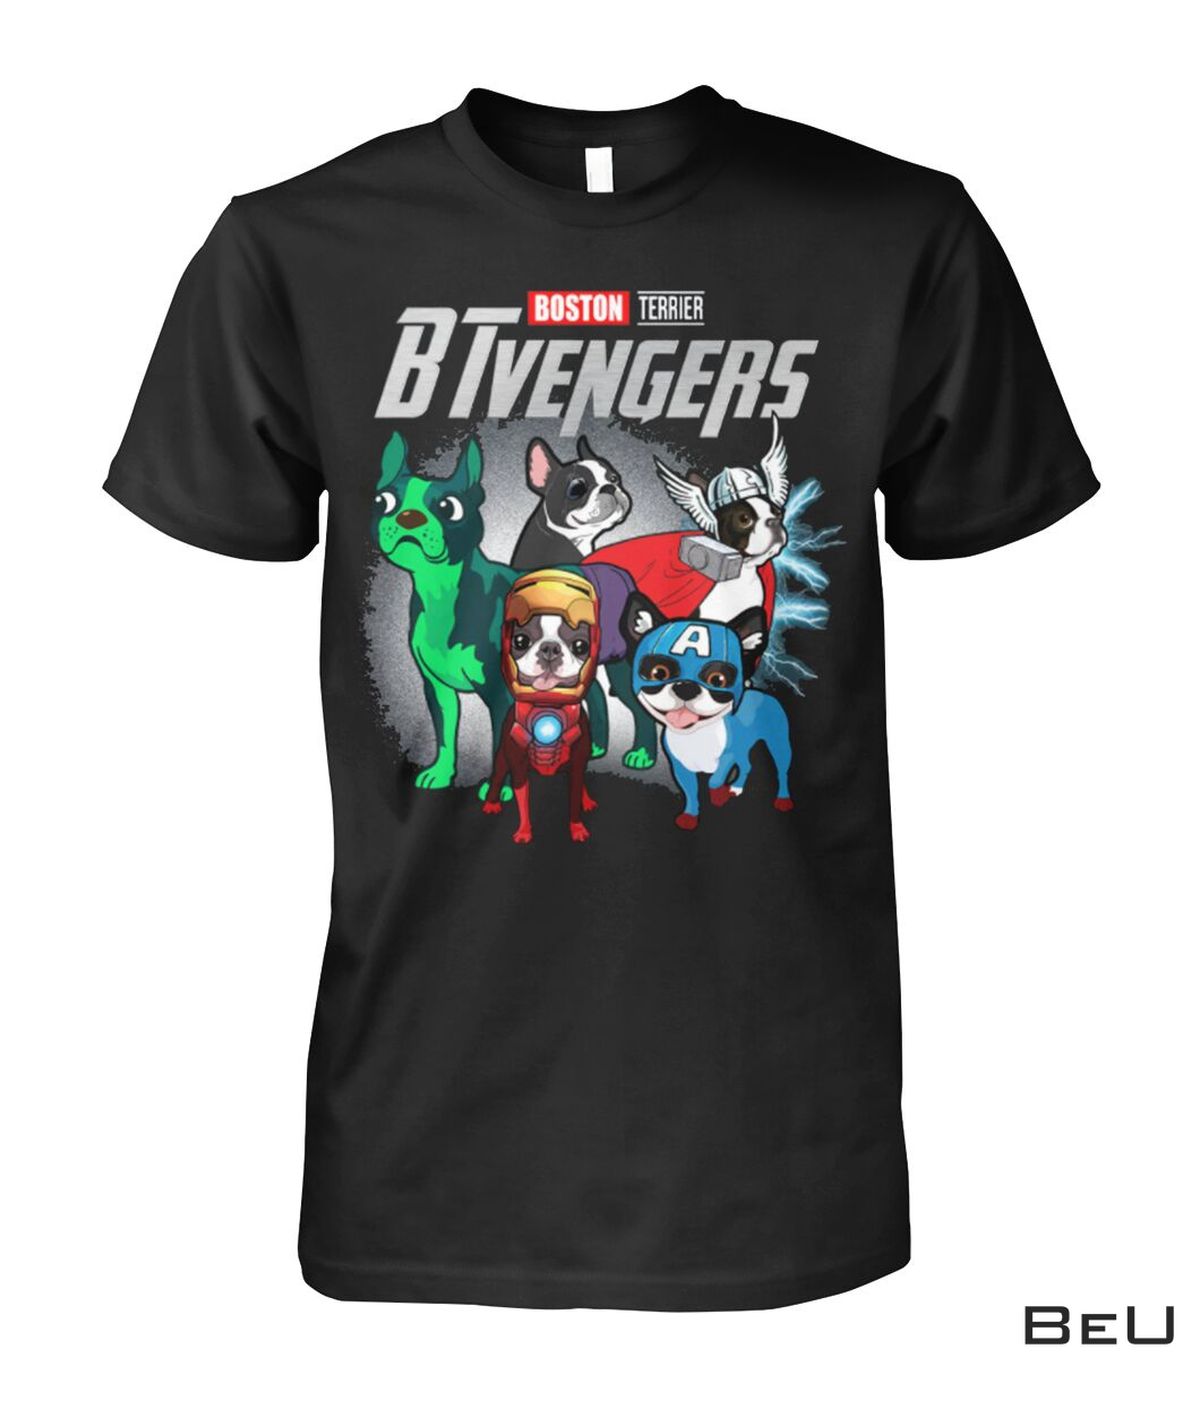 Boston Terrier BTvengers Avengers Shirt